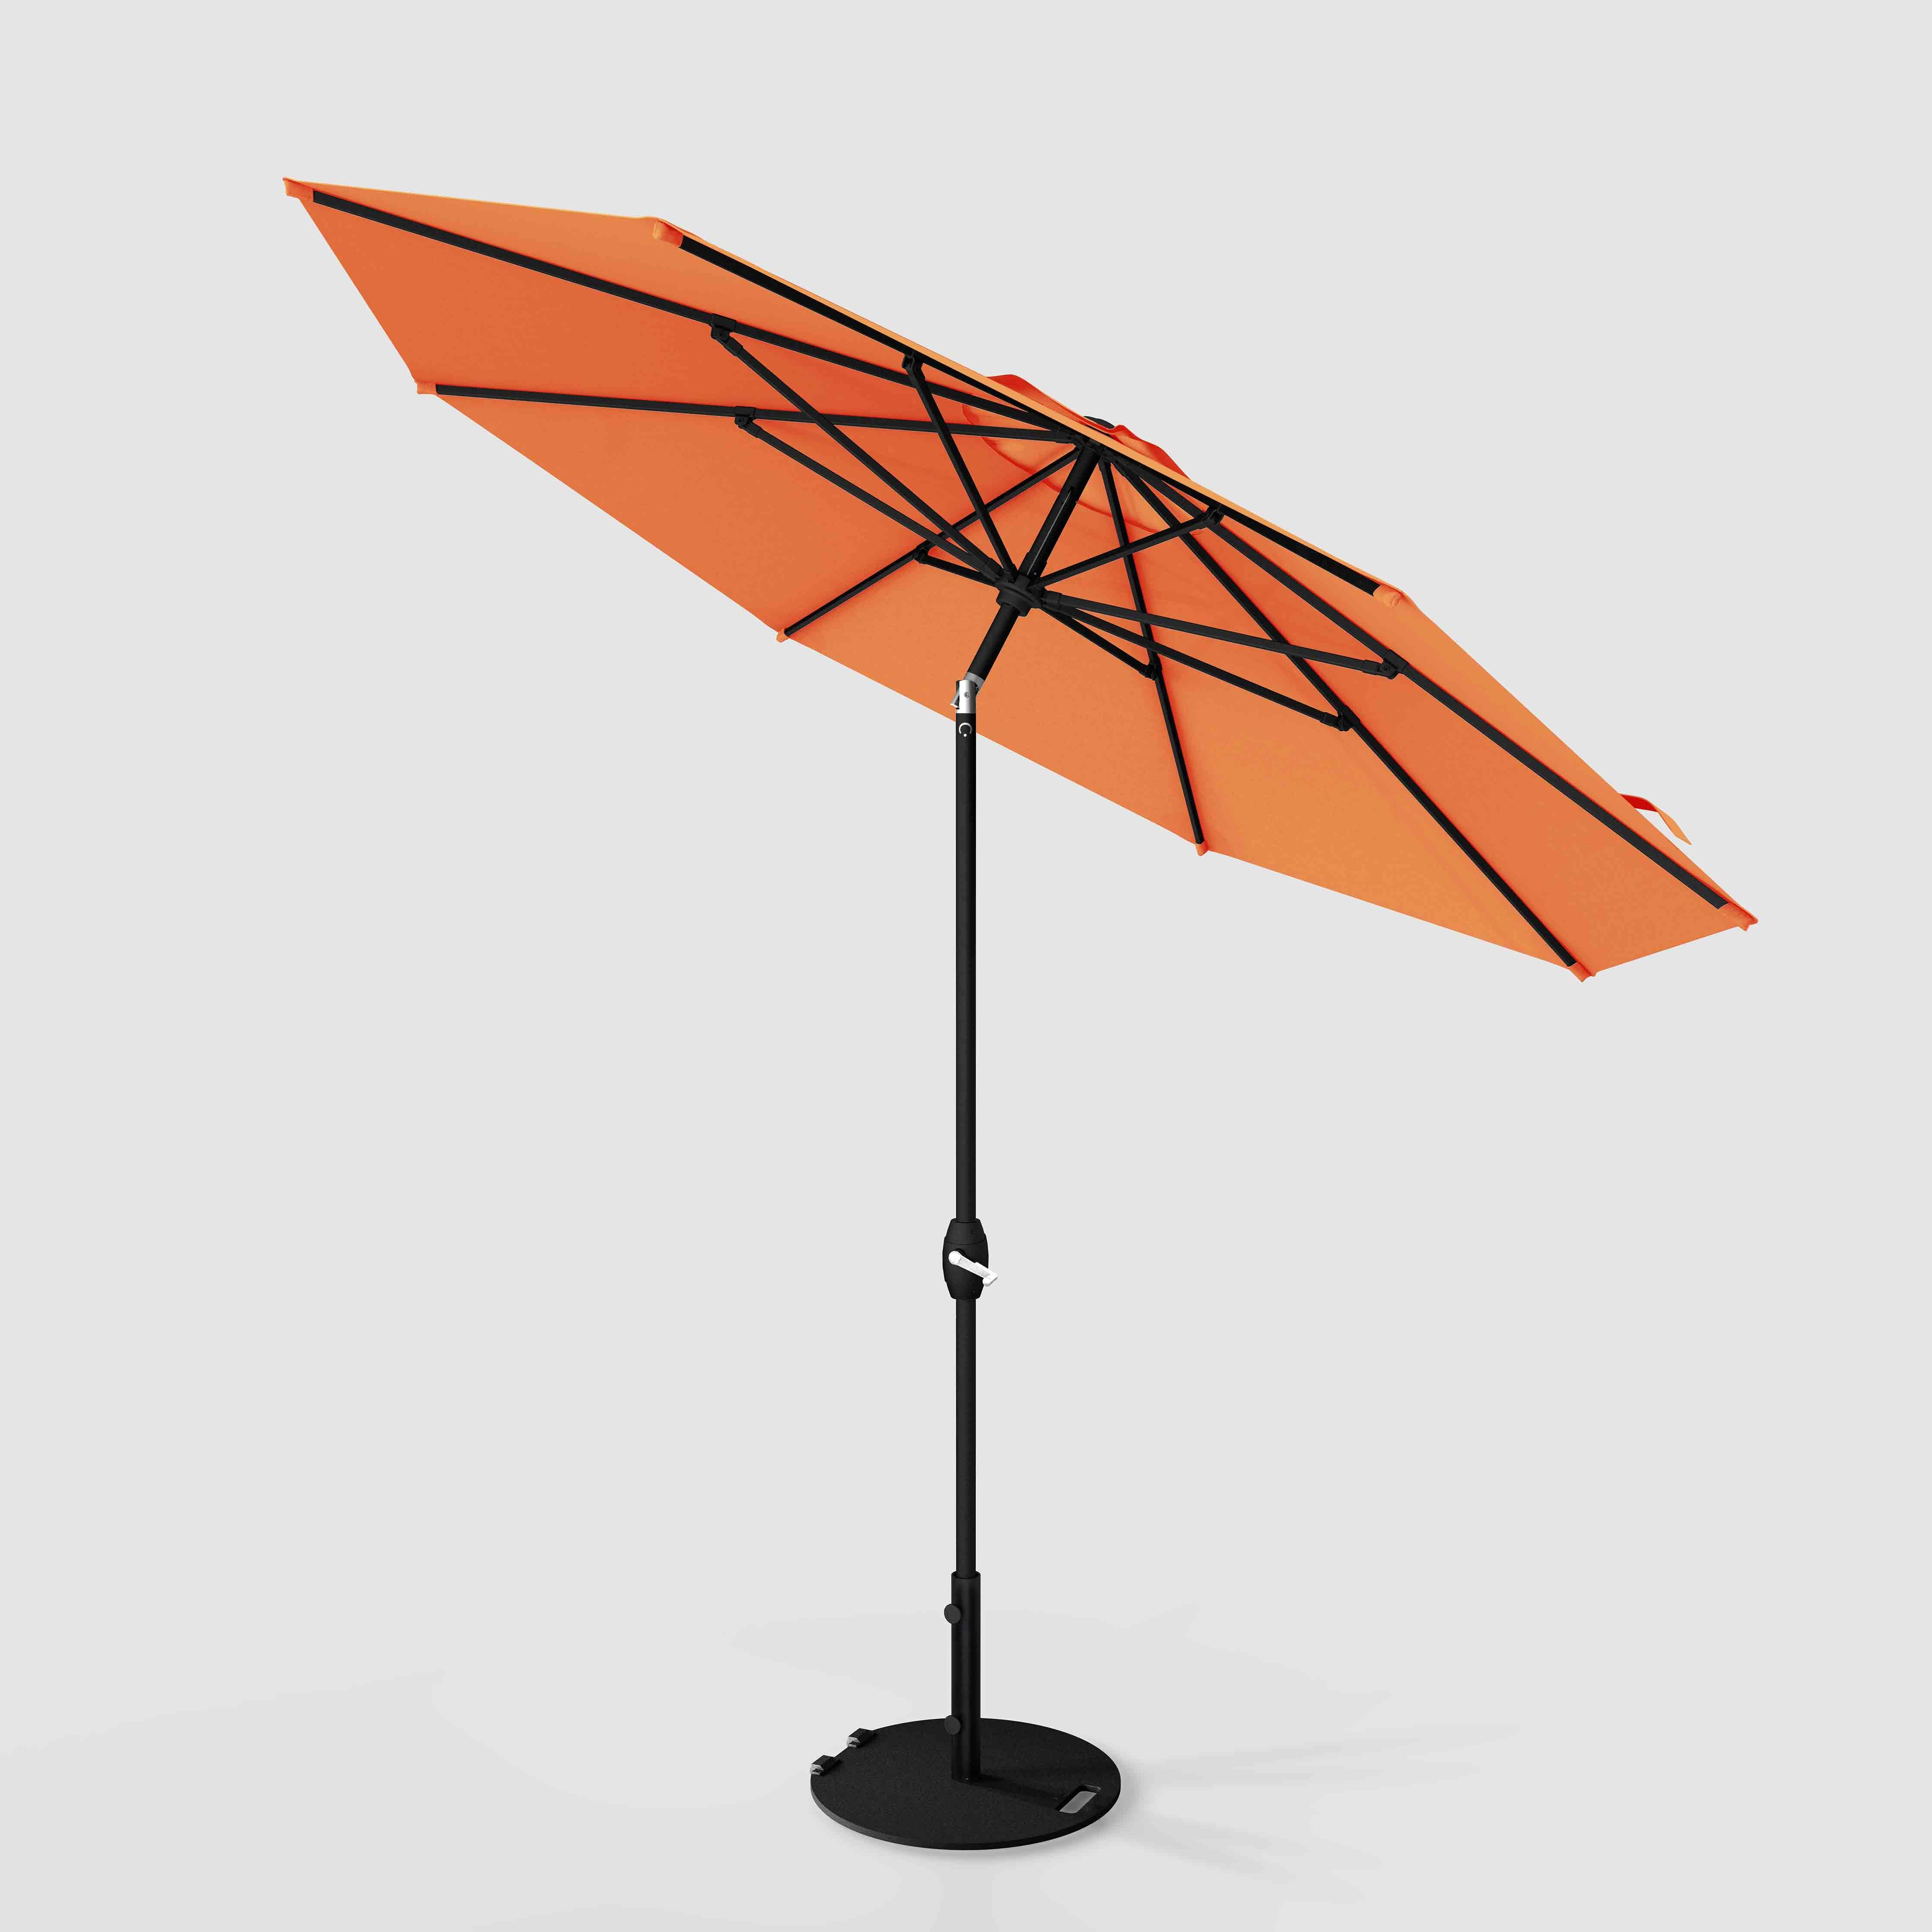 The Lean™ - Sunbrella Canvas Tuscan